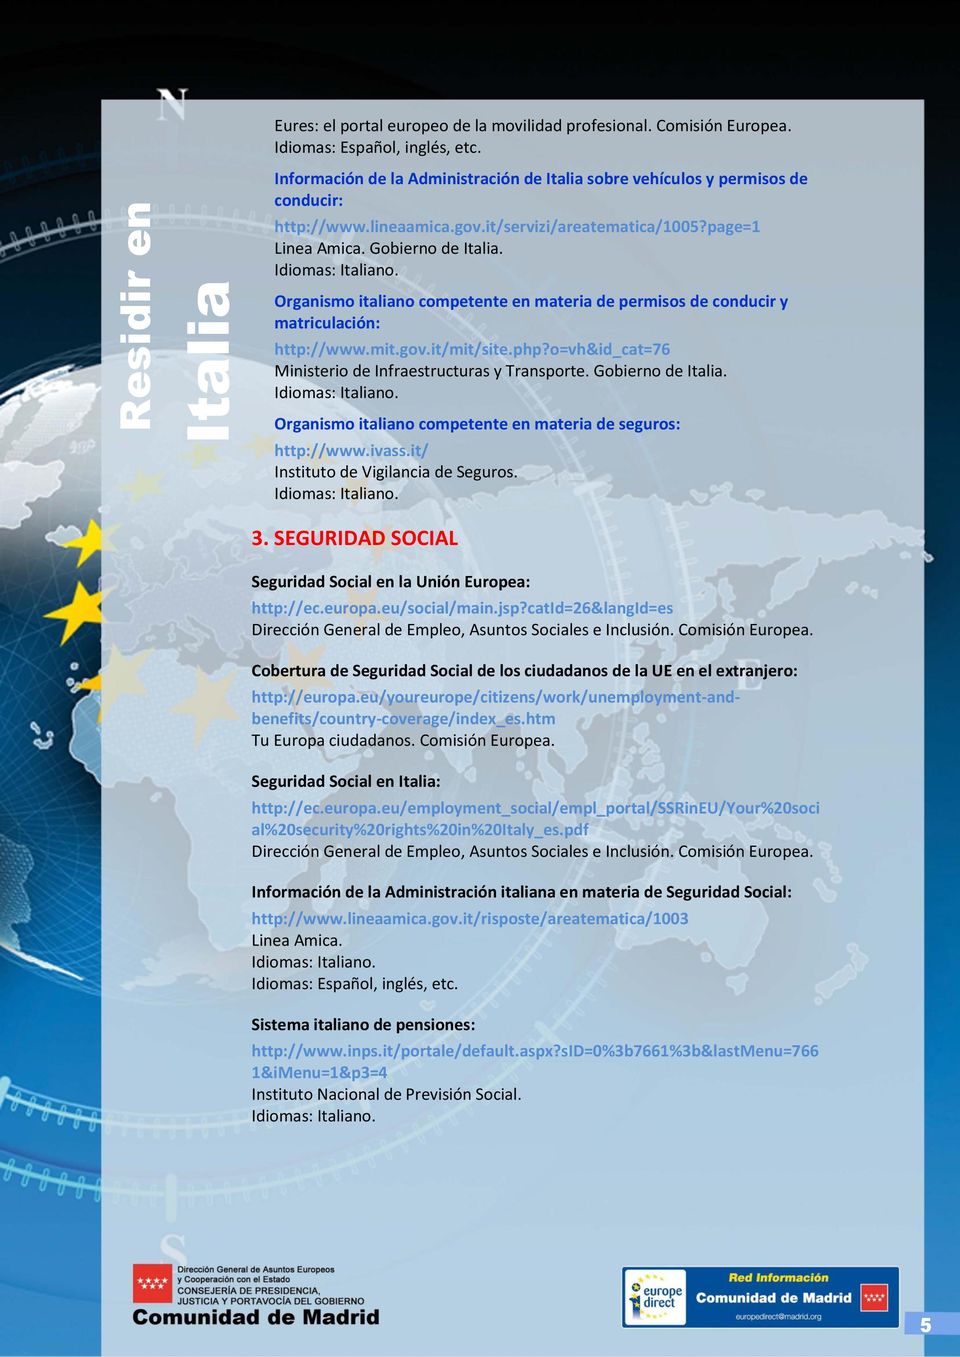 Organismo italiano competente en materia de permisos de conducir y matriculación: http://www.mit.gov.it/mit/site.php?o=vh&id_cat=76 Ministerio de Infraestructuras y Transporte. Gobierno de.